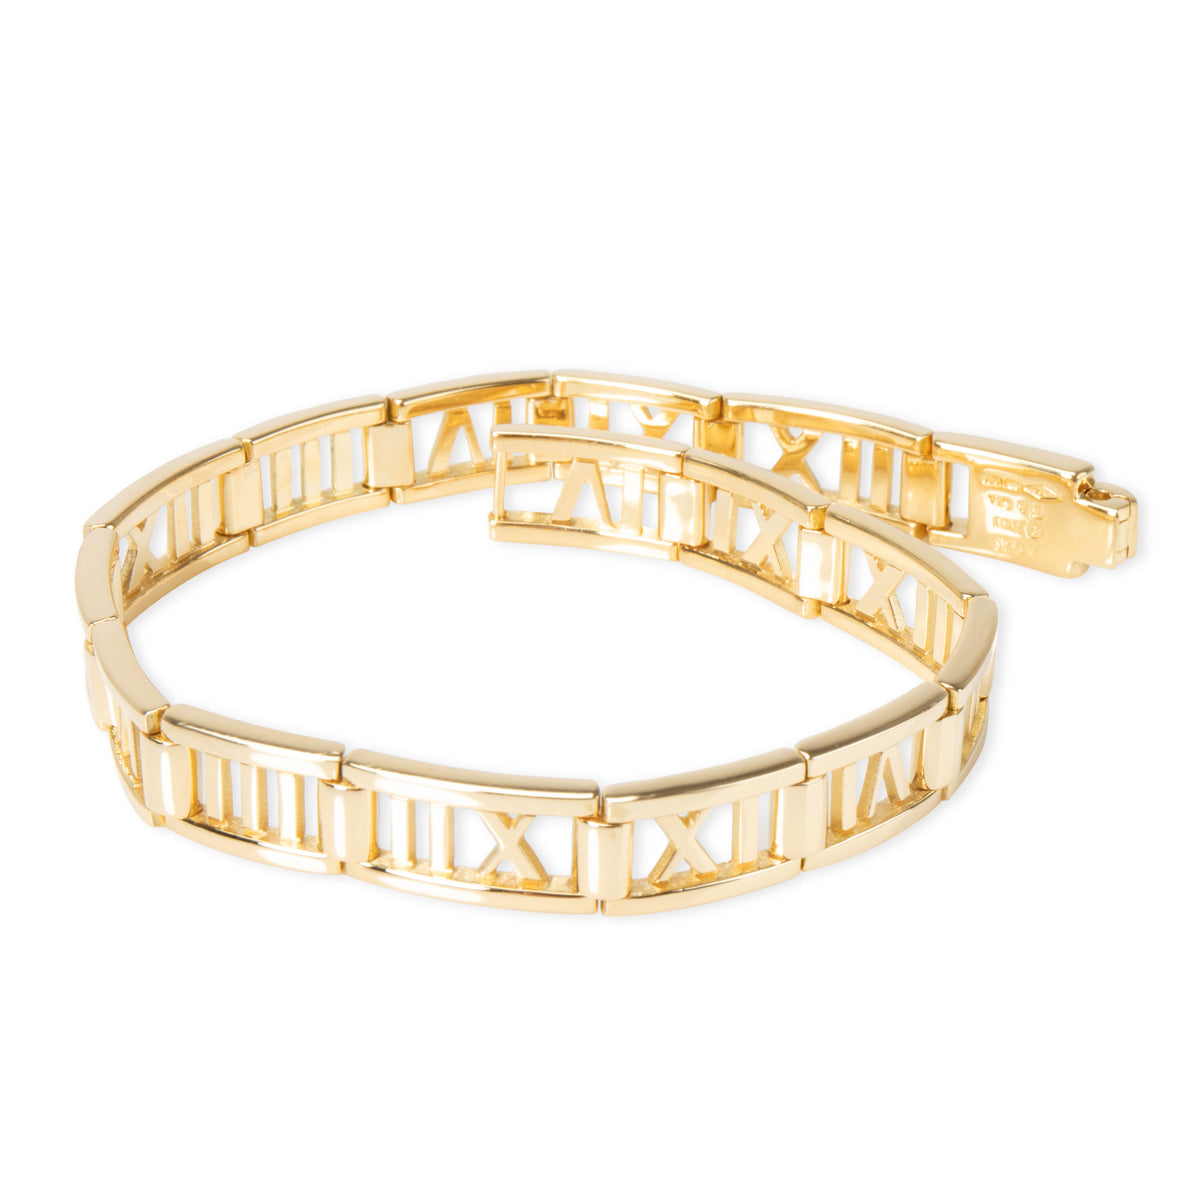 Tiffany & Co. Atlas Pierced Bracelet in 18K Yellow Gold